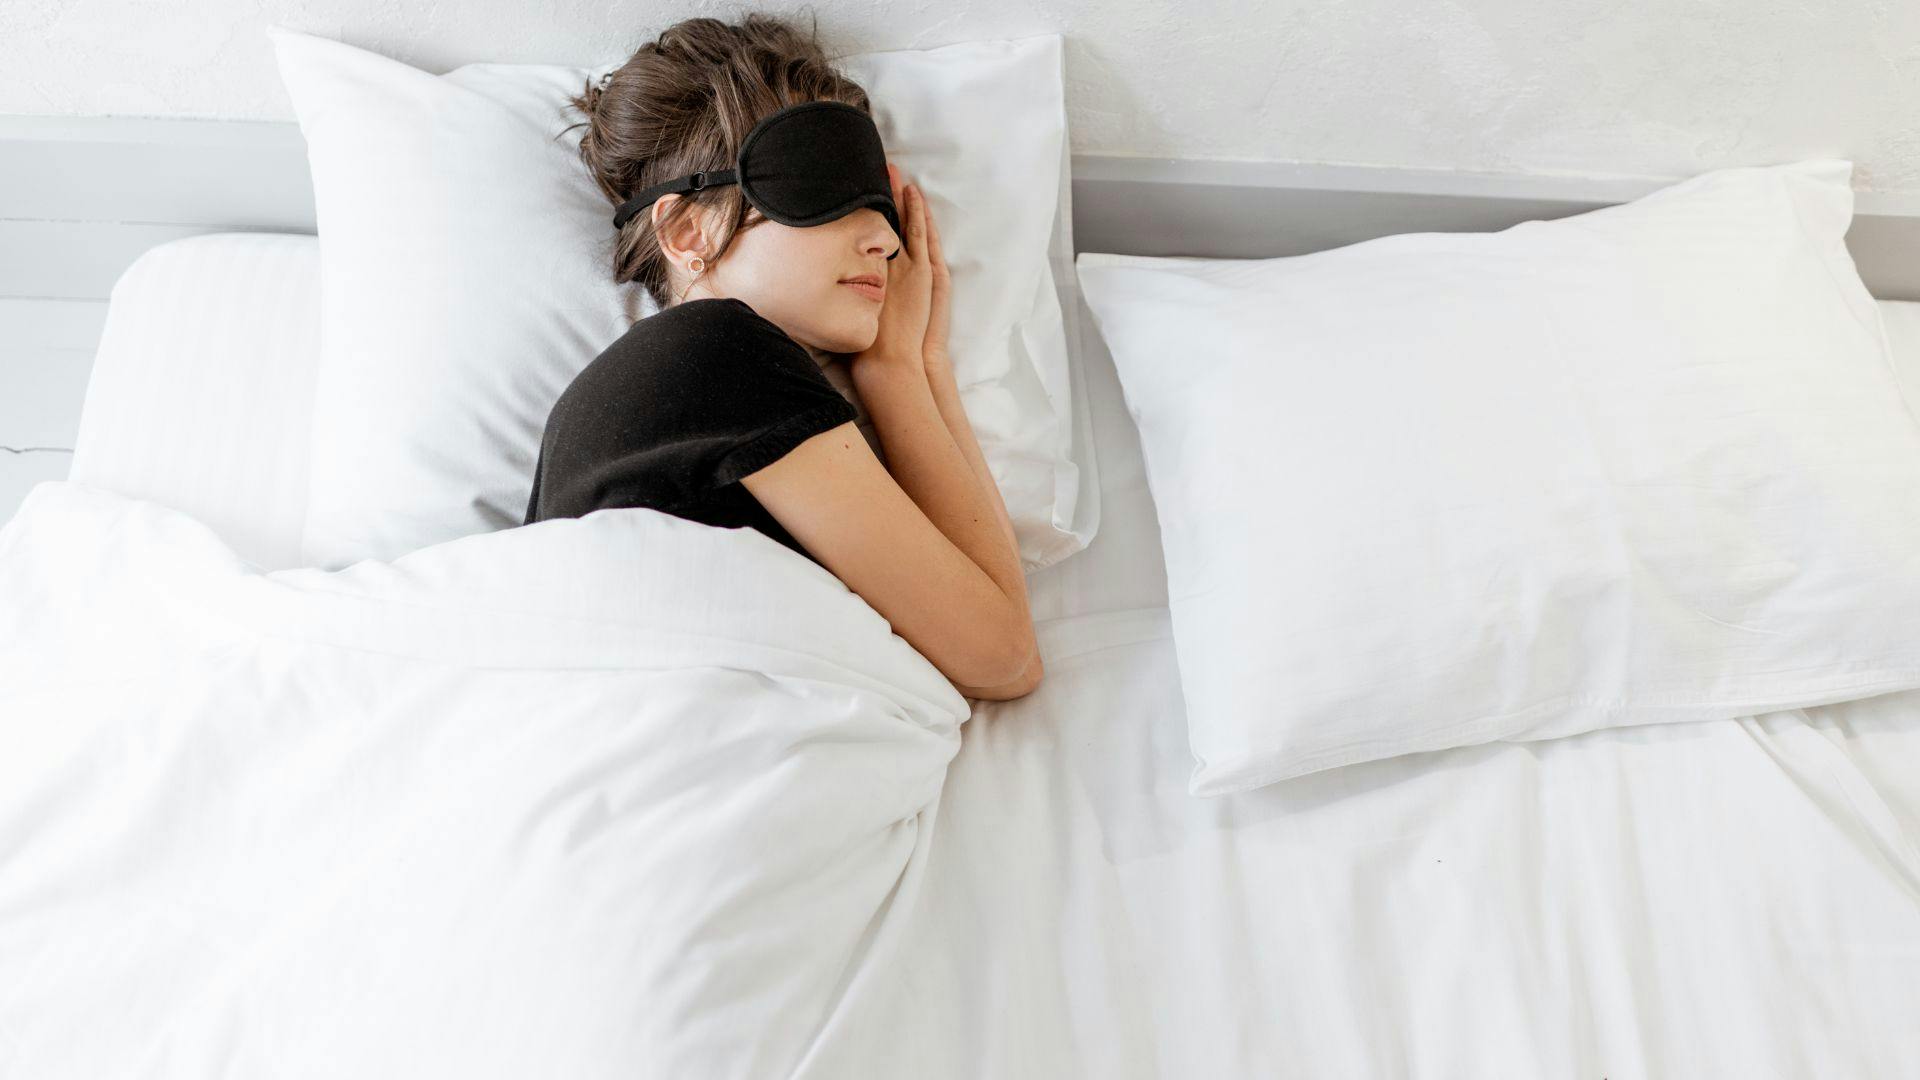 "미국 연구 결과, 96%가 2분만에 잠들었다!" 잠을 잘 자는 과학적인 방법 | 이동환 원장